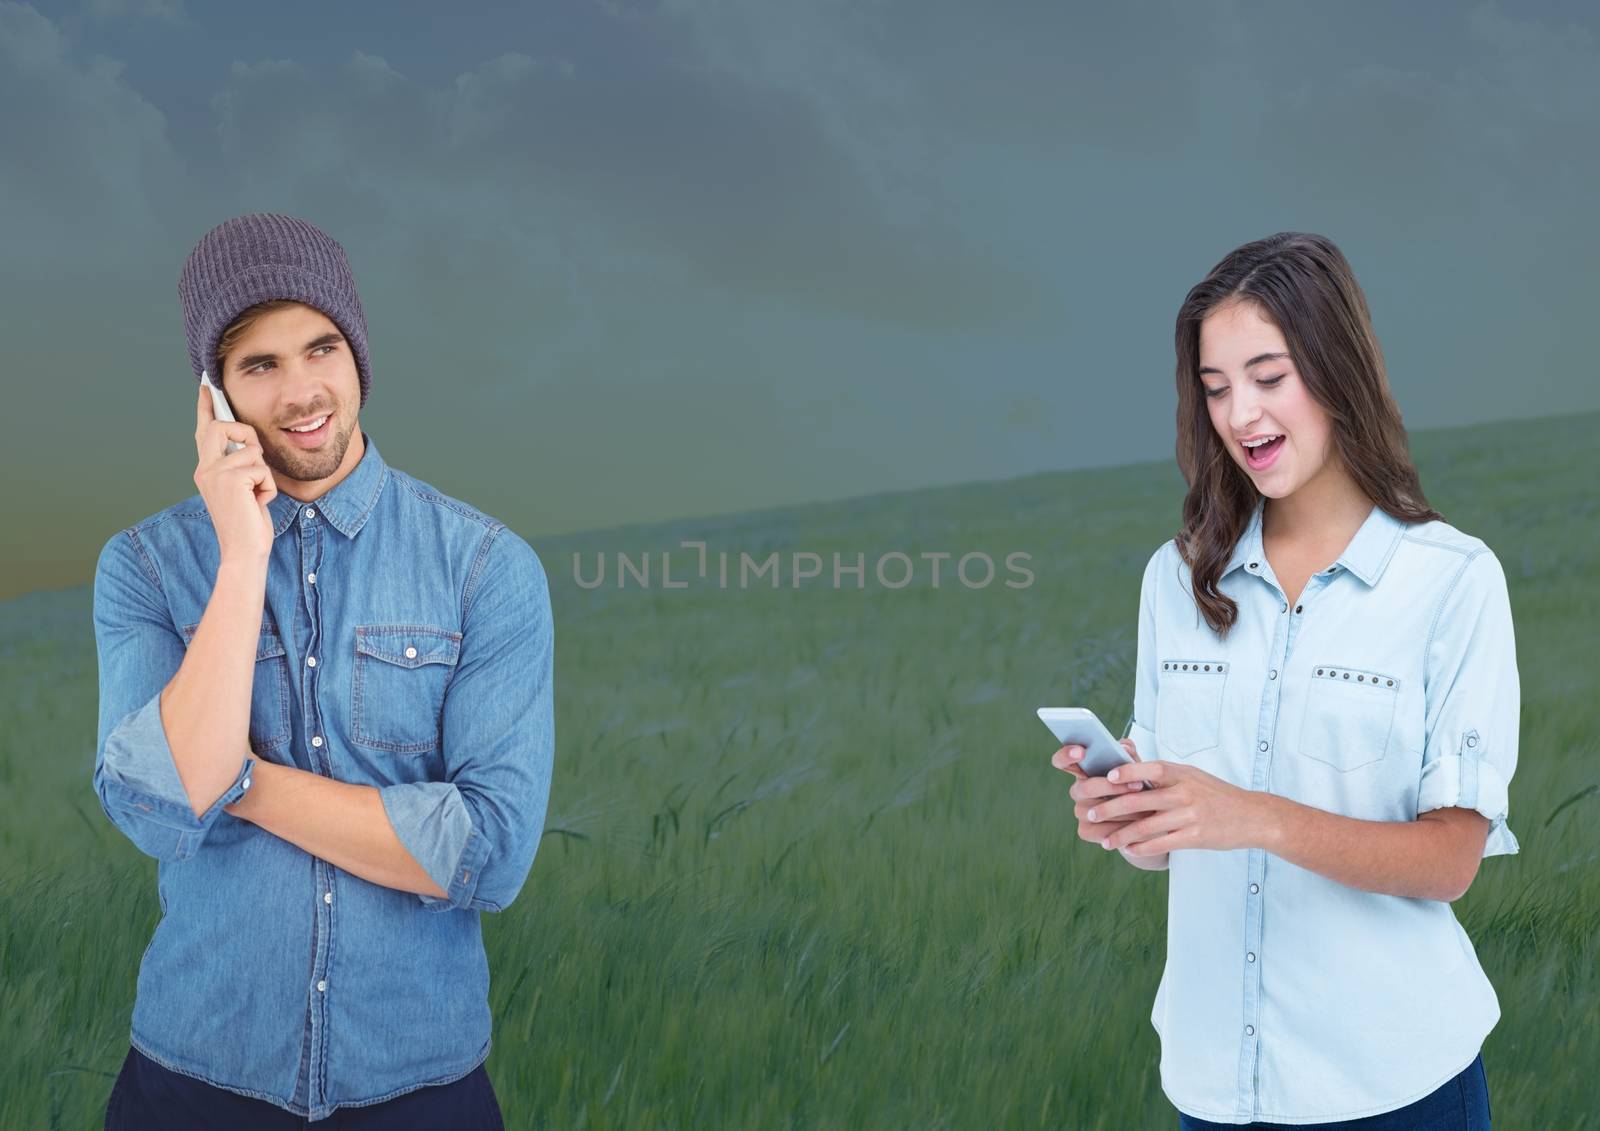 Digital composite of People on phones in field